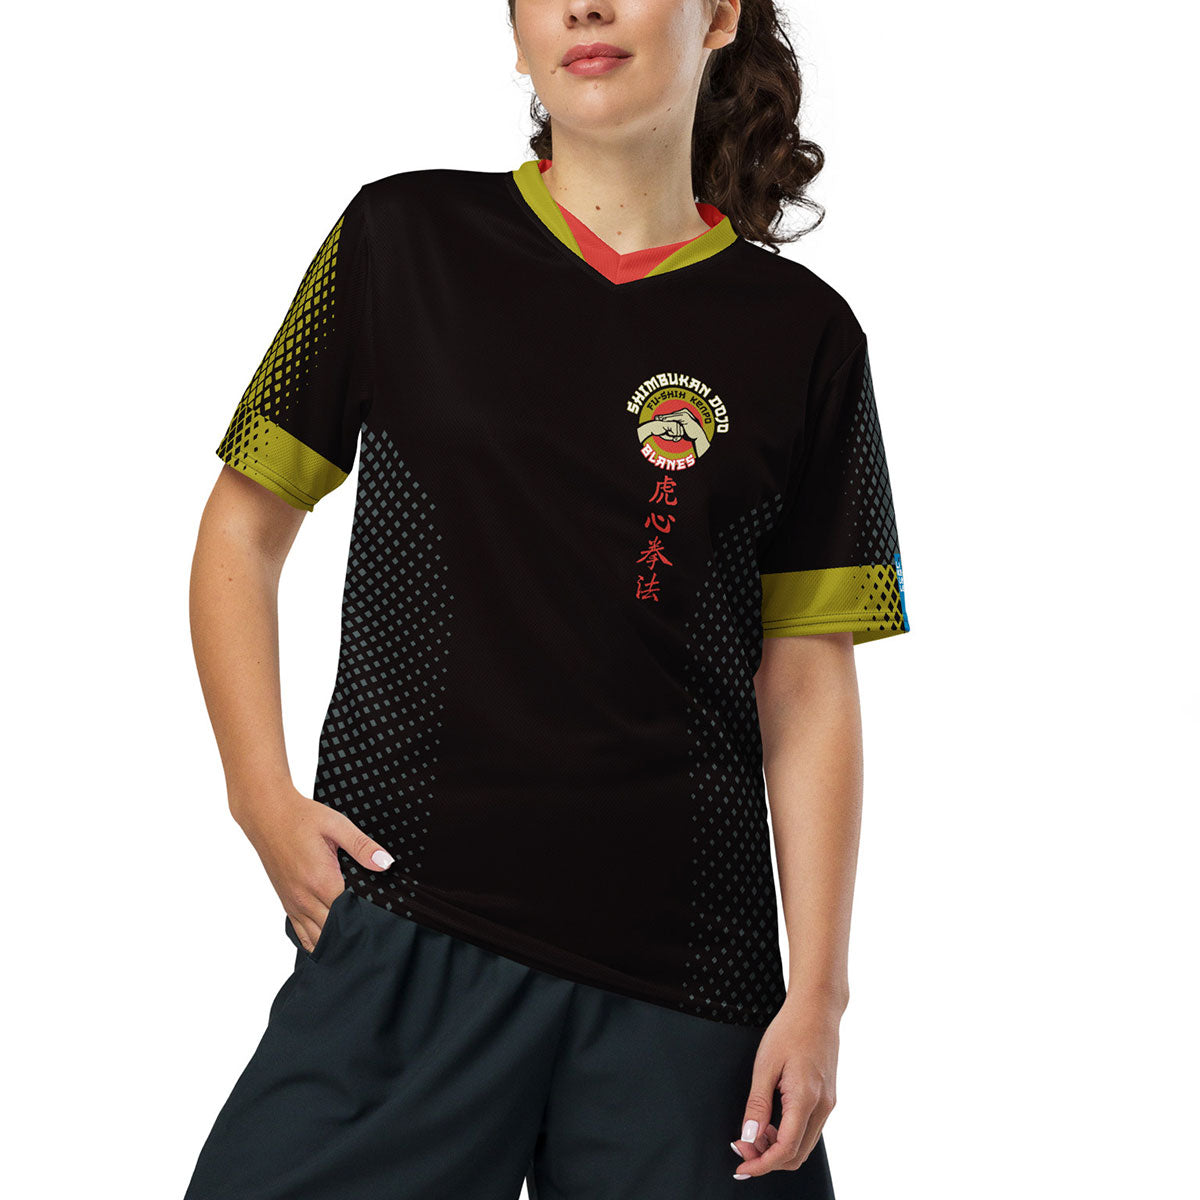 SHIMBUKAN DOJO · Camiseta deportiva m/corta·Unisex · Premium·Full Print-285x4ipi